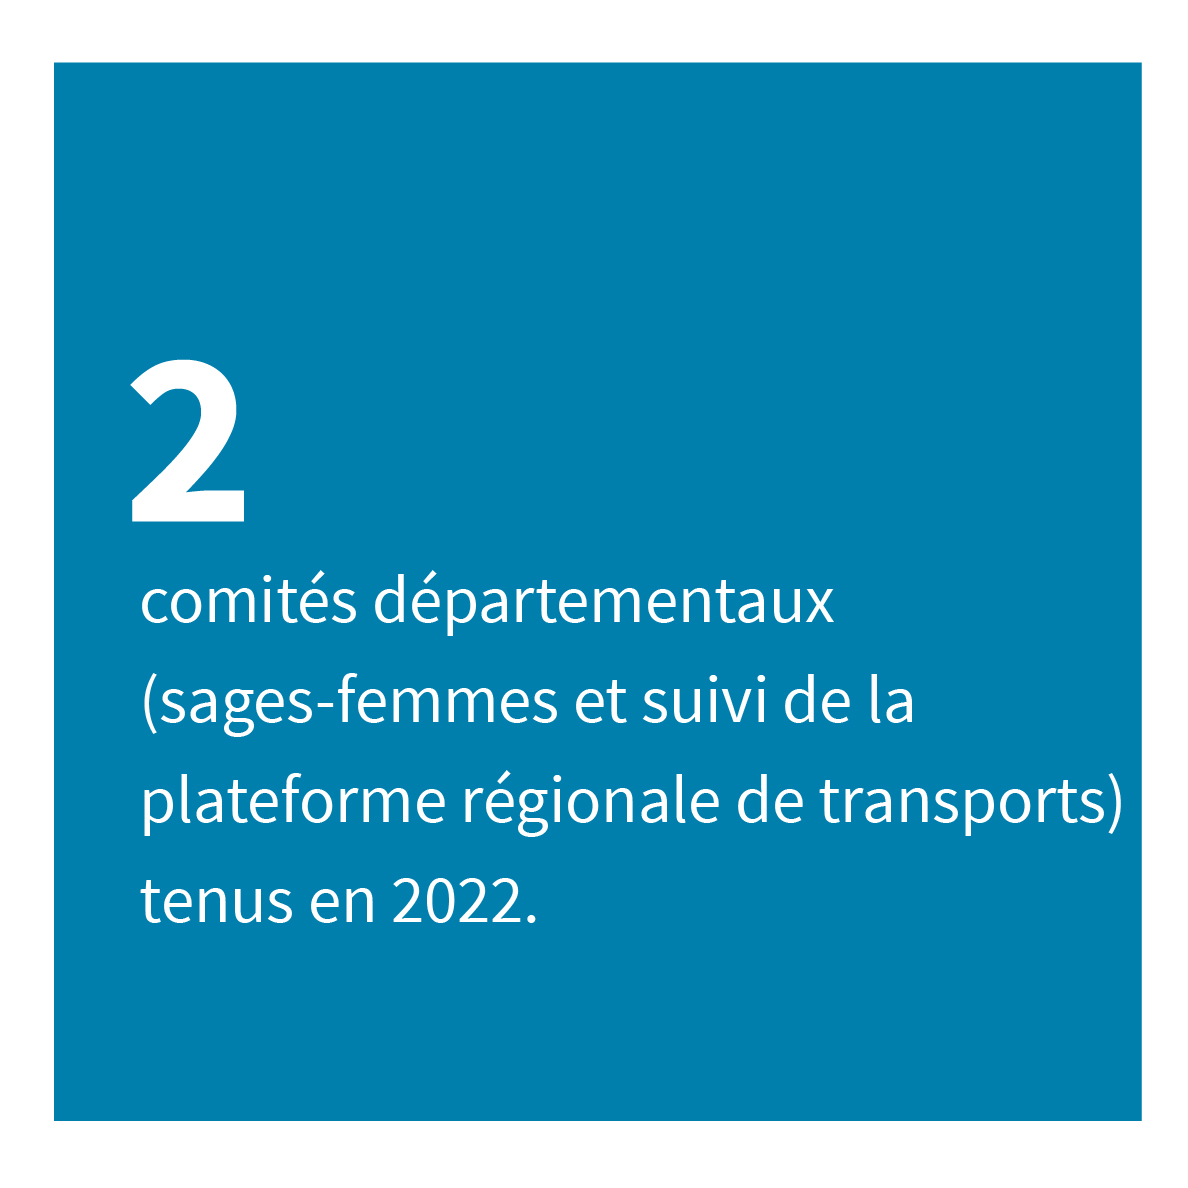 2 comités départementaux (sages-femmes et suivi de la plateforme régionale de transports) tenus en 2022.